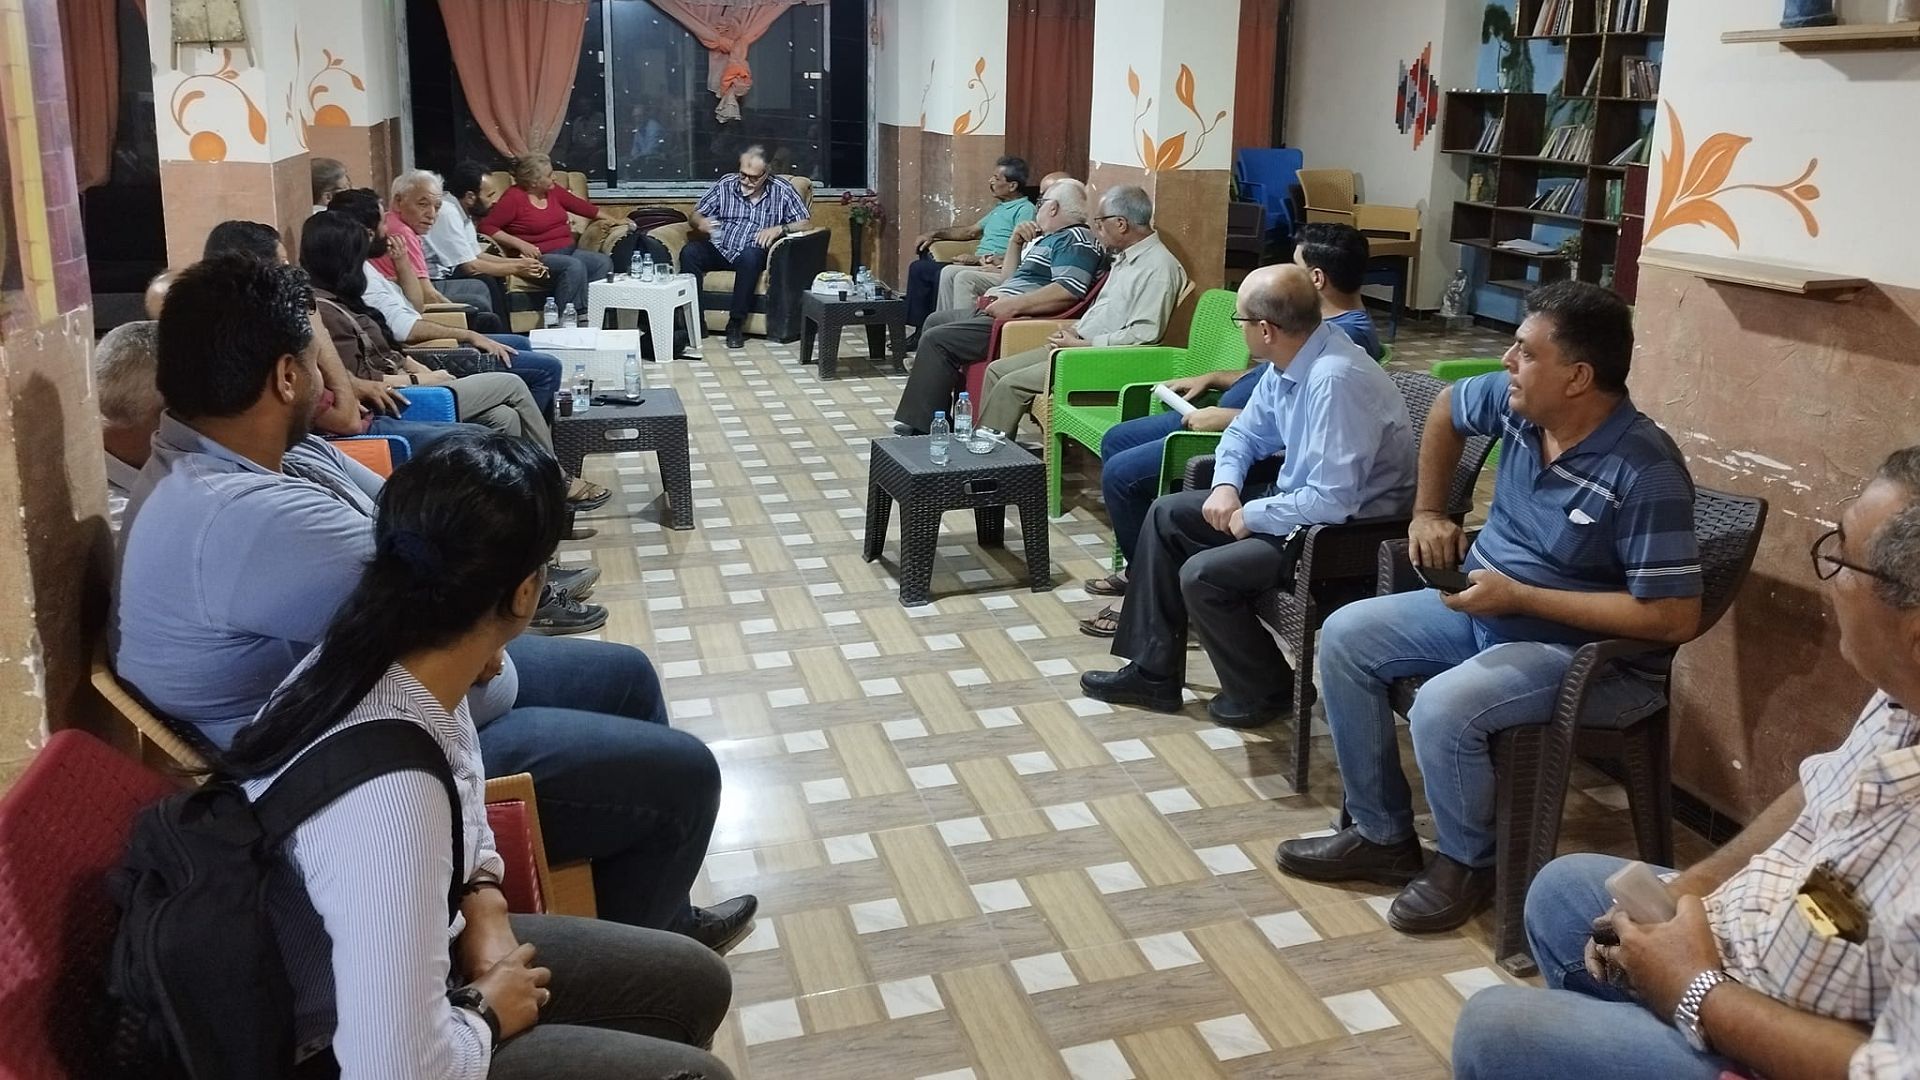 Diskussionsrunde in Raqqa im Juli 2022 über politische Lösungen und Herausforderungen in Syrien